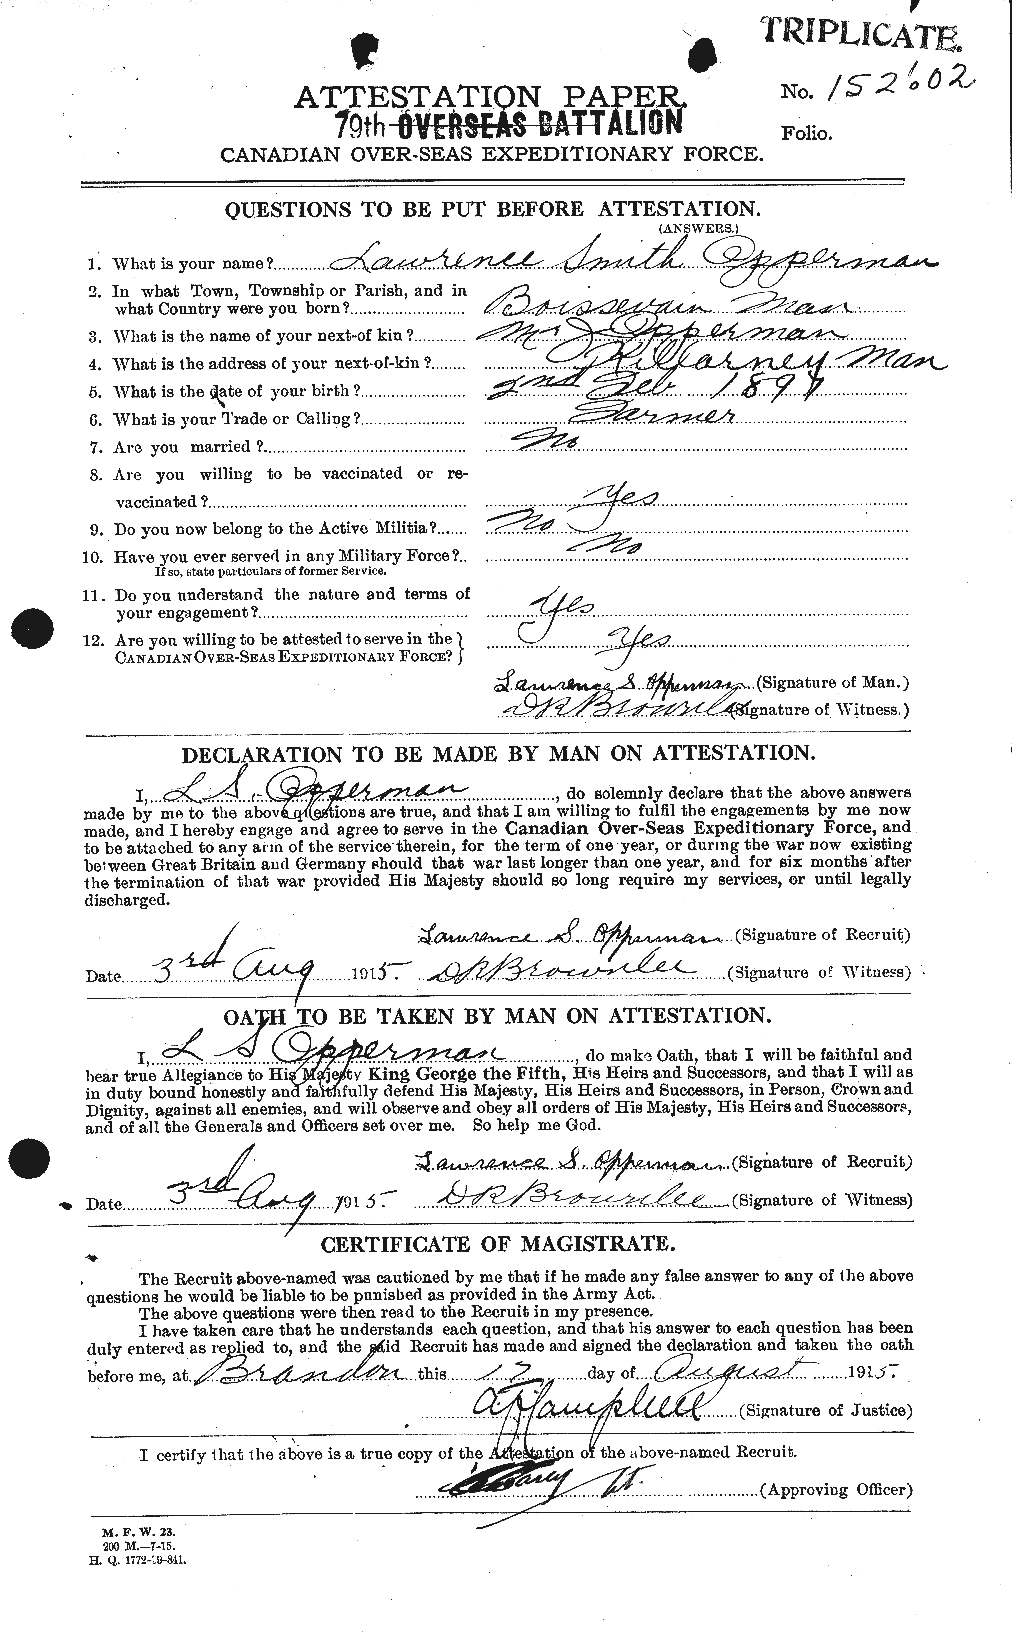 Dossiers du Personnel de la Première Guerre mondiale - CEC 559275a